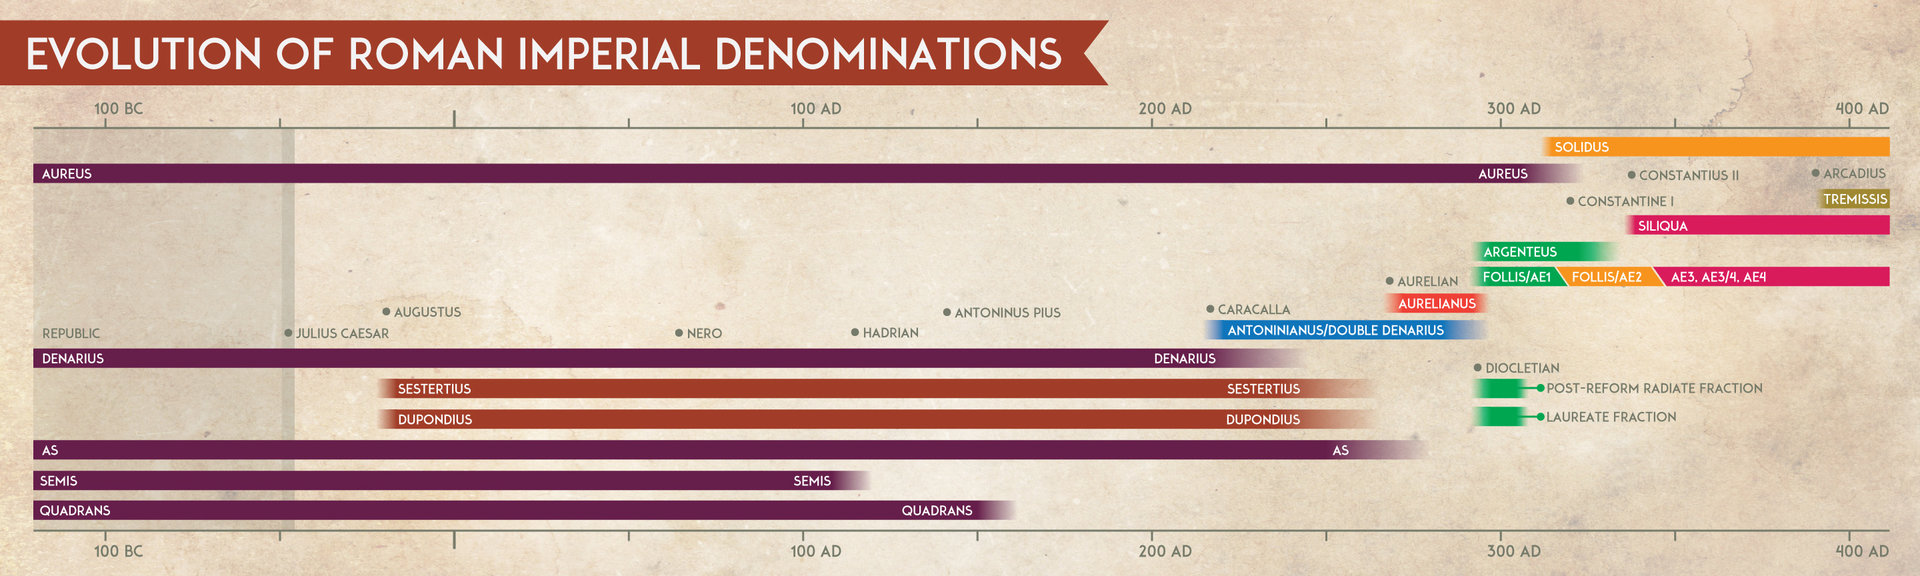 Evolution-Roman-Imperial-Denominations-3.jpg